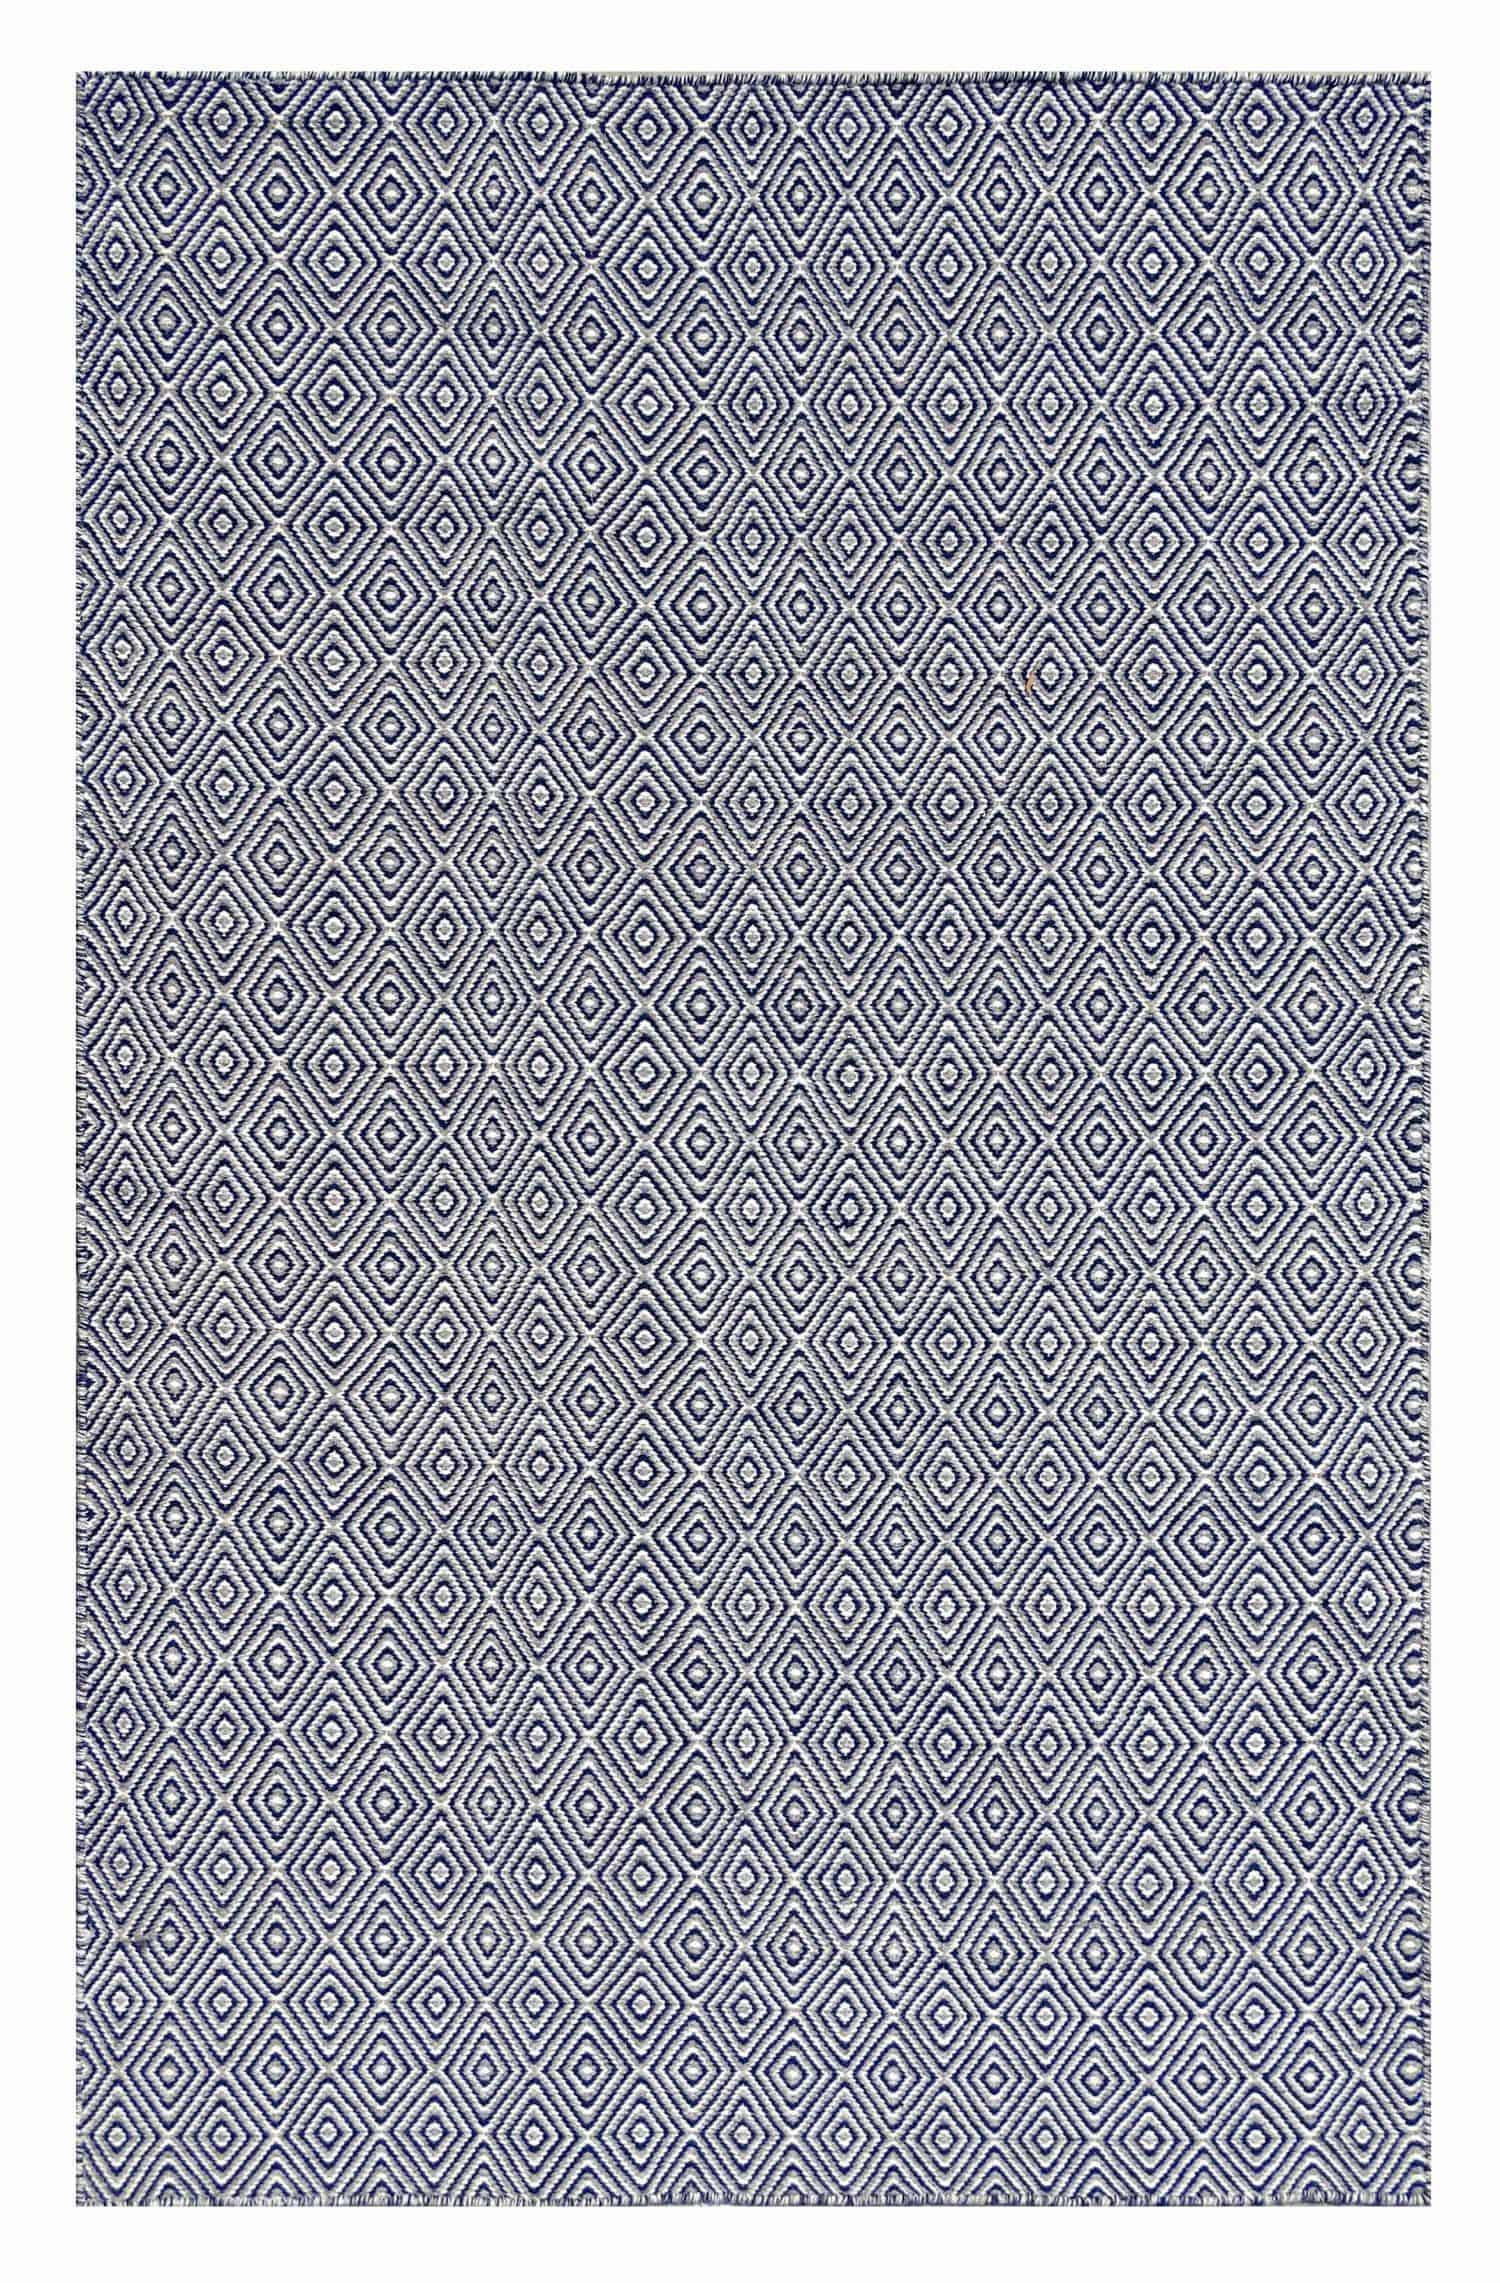 Herman Diamond - Navy blue rugs